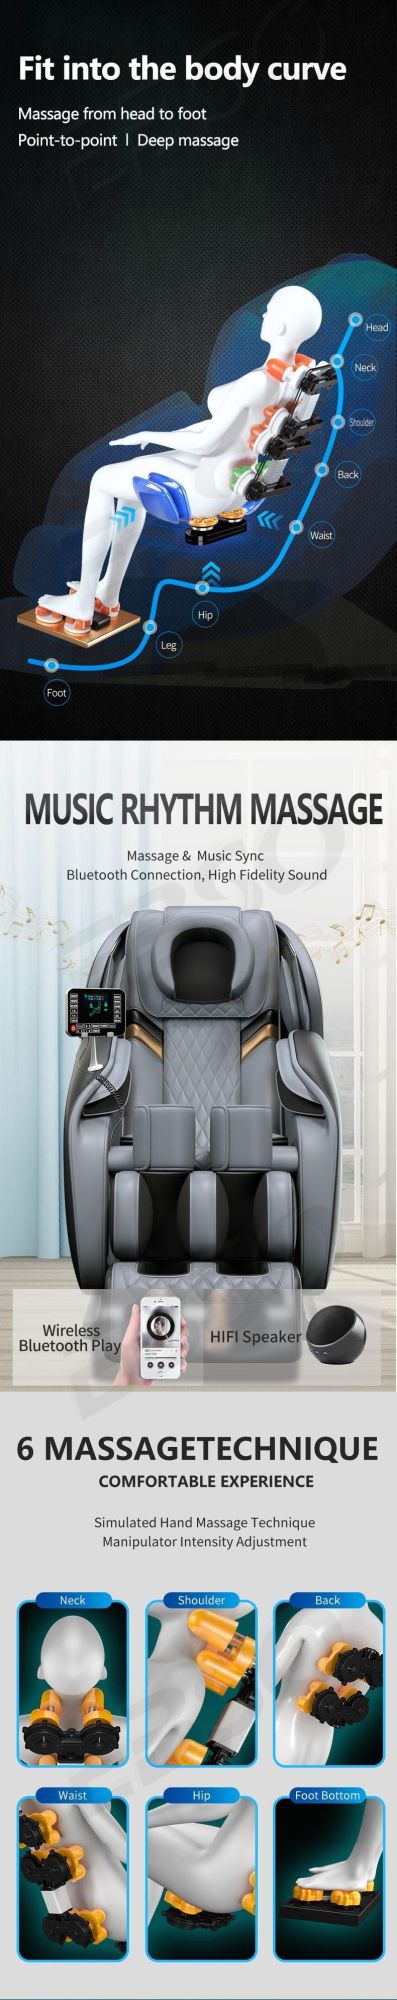 Body Massage Luxury Commercial Full Body Massage Chair Novel Massager